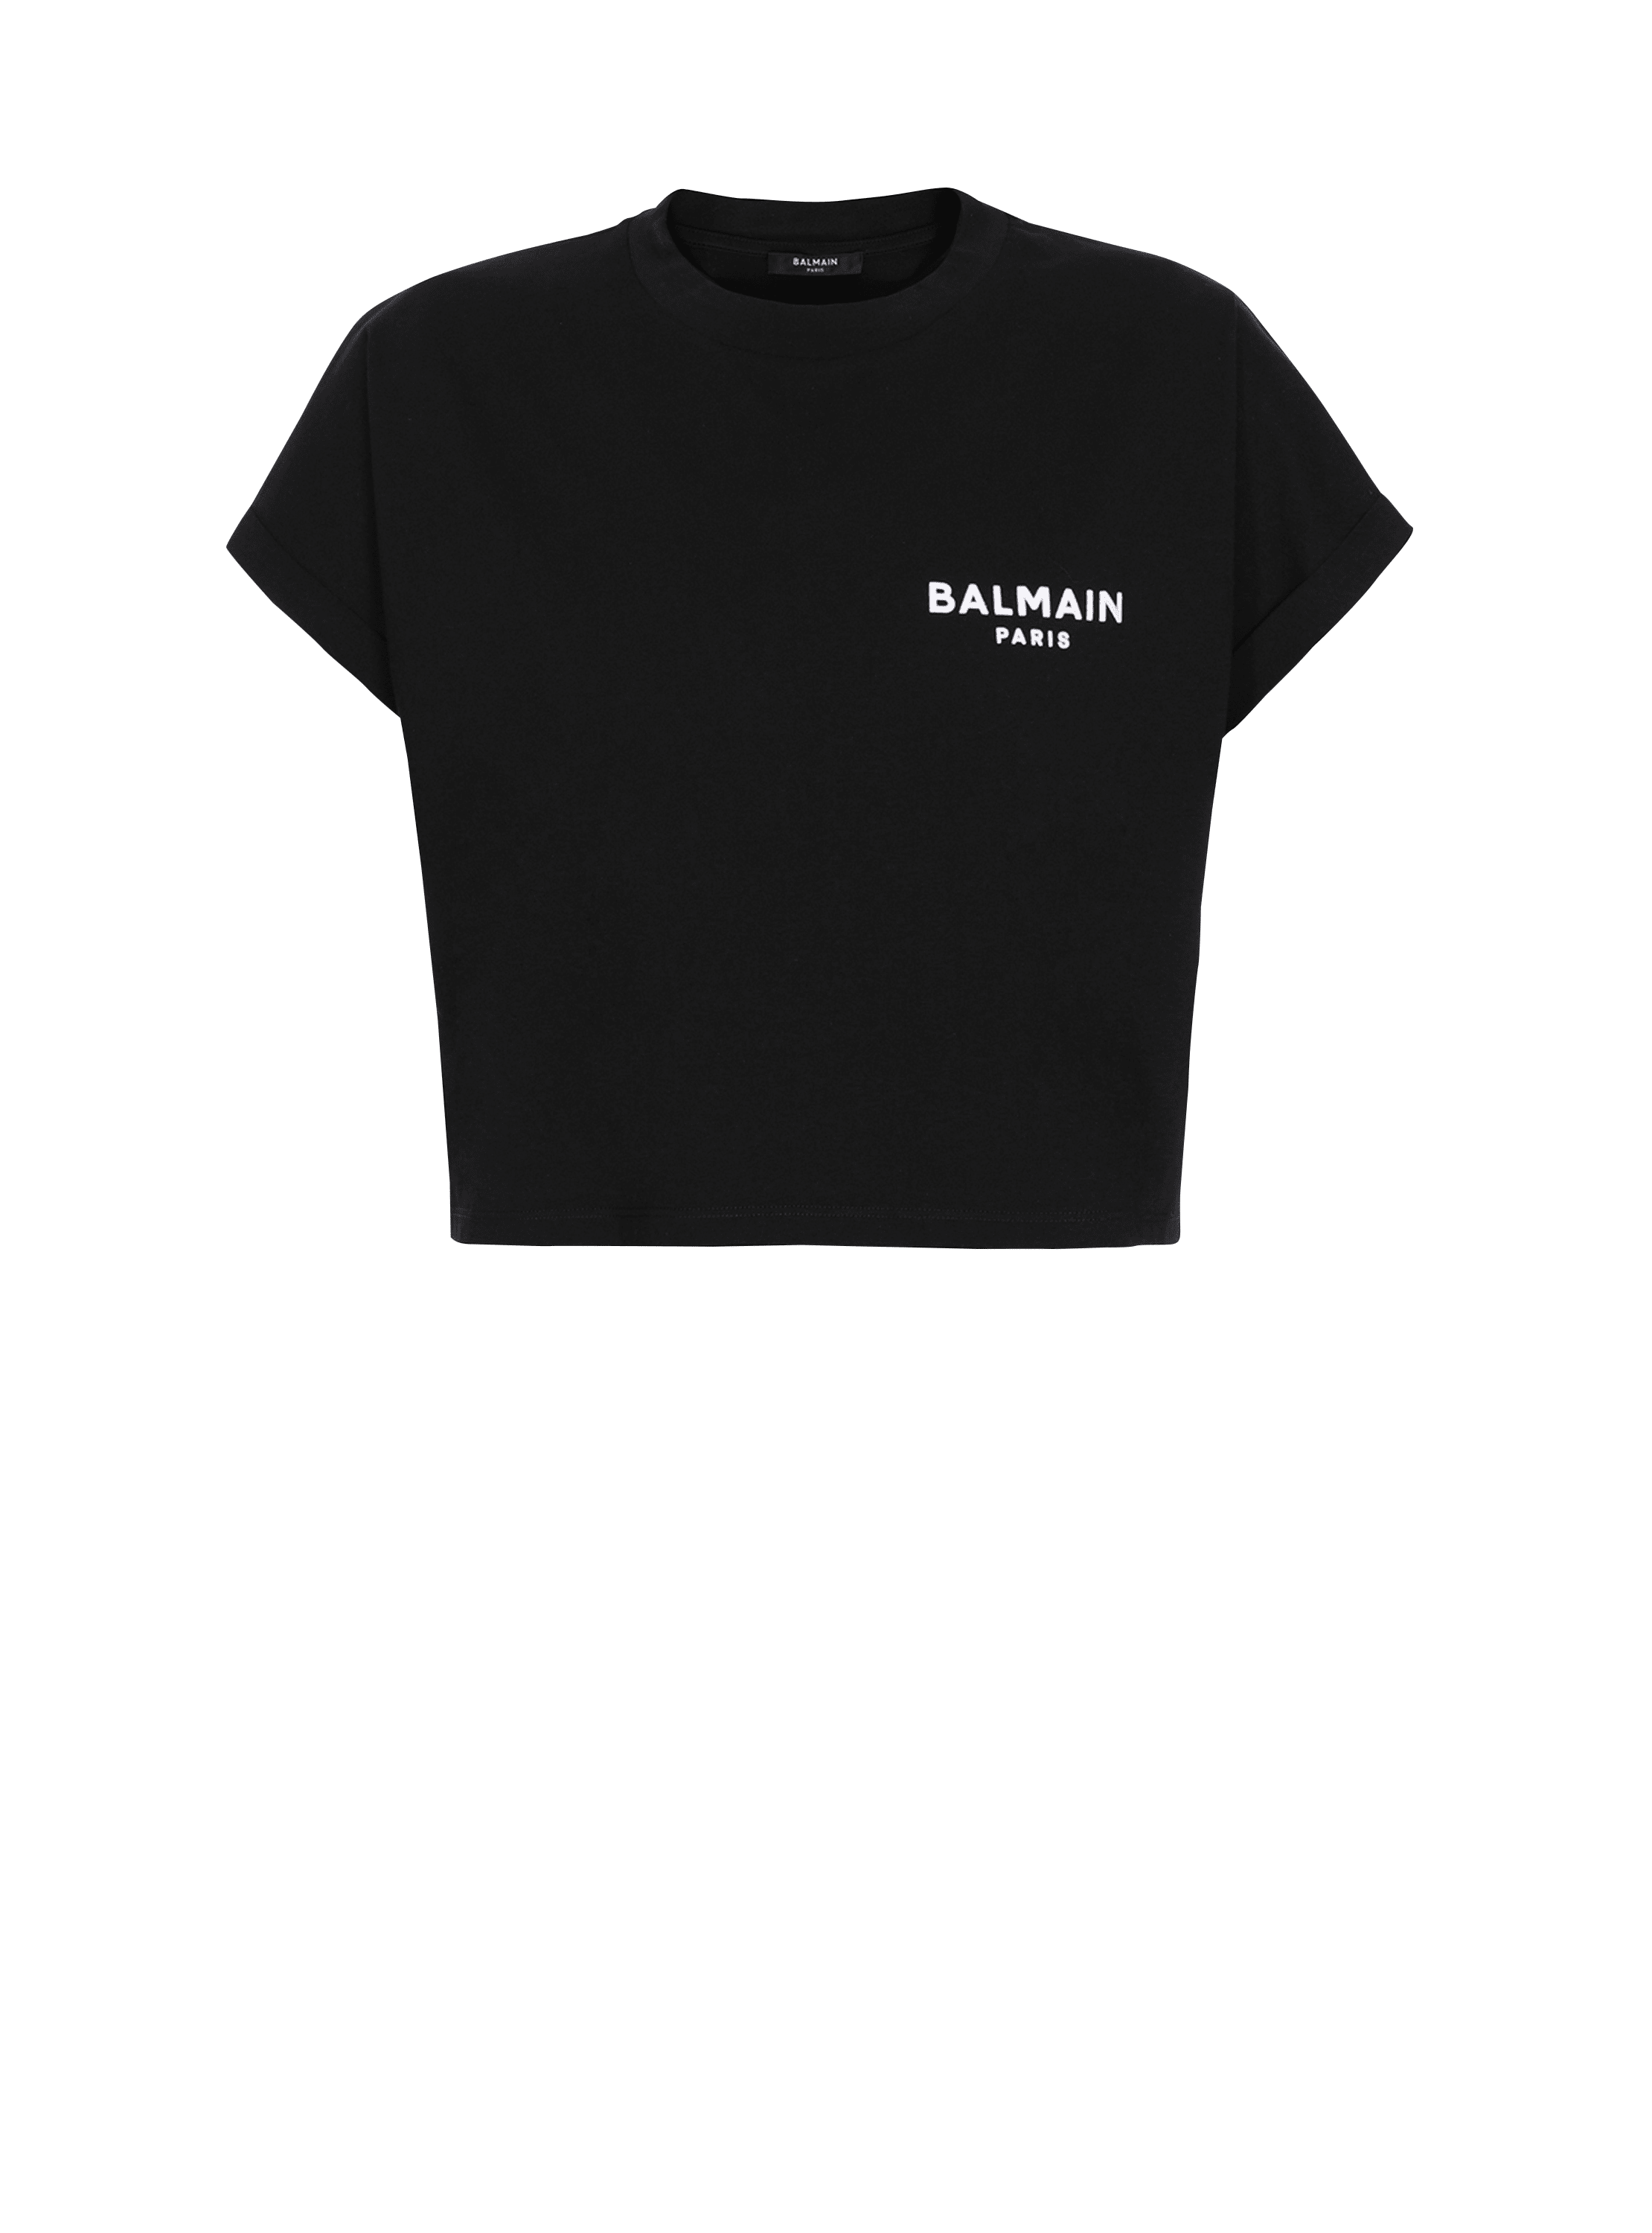 T-shirt corta in cotone con piccolo logo Balmain floccato, nero, hi-res